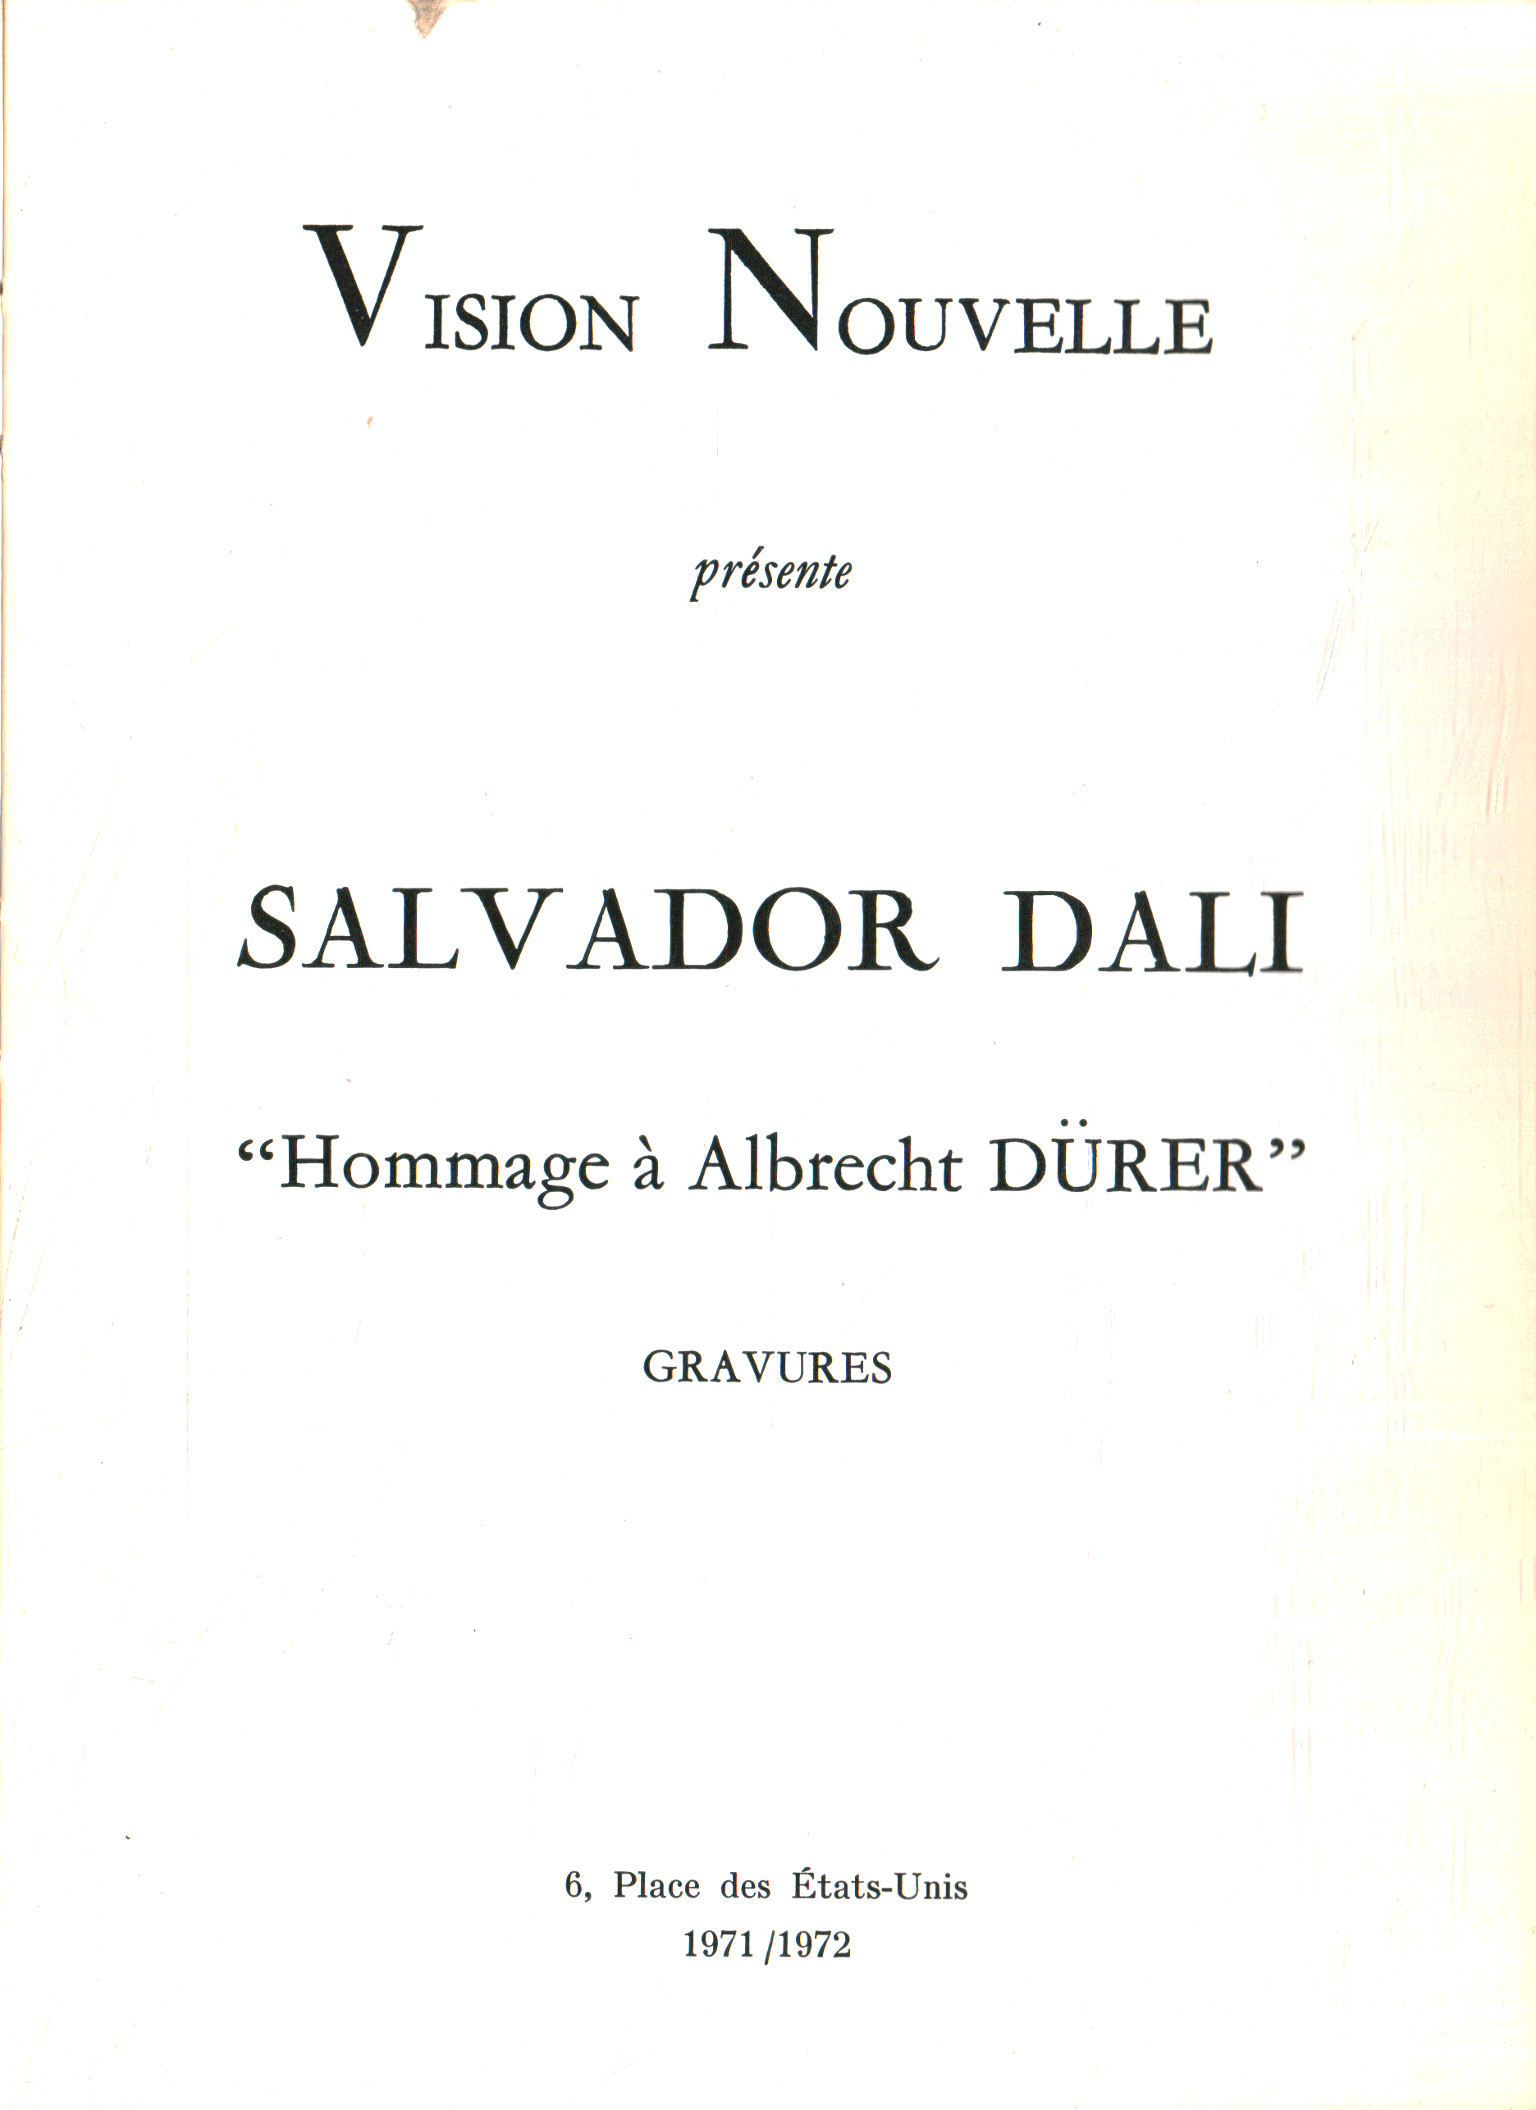 Salvador Dalí. Hommage à Albrech